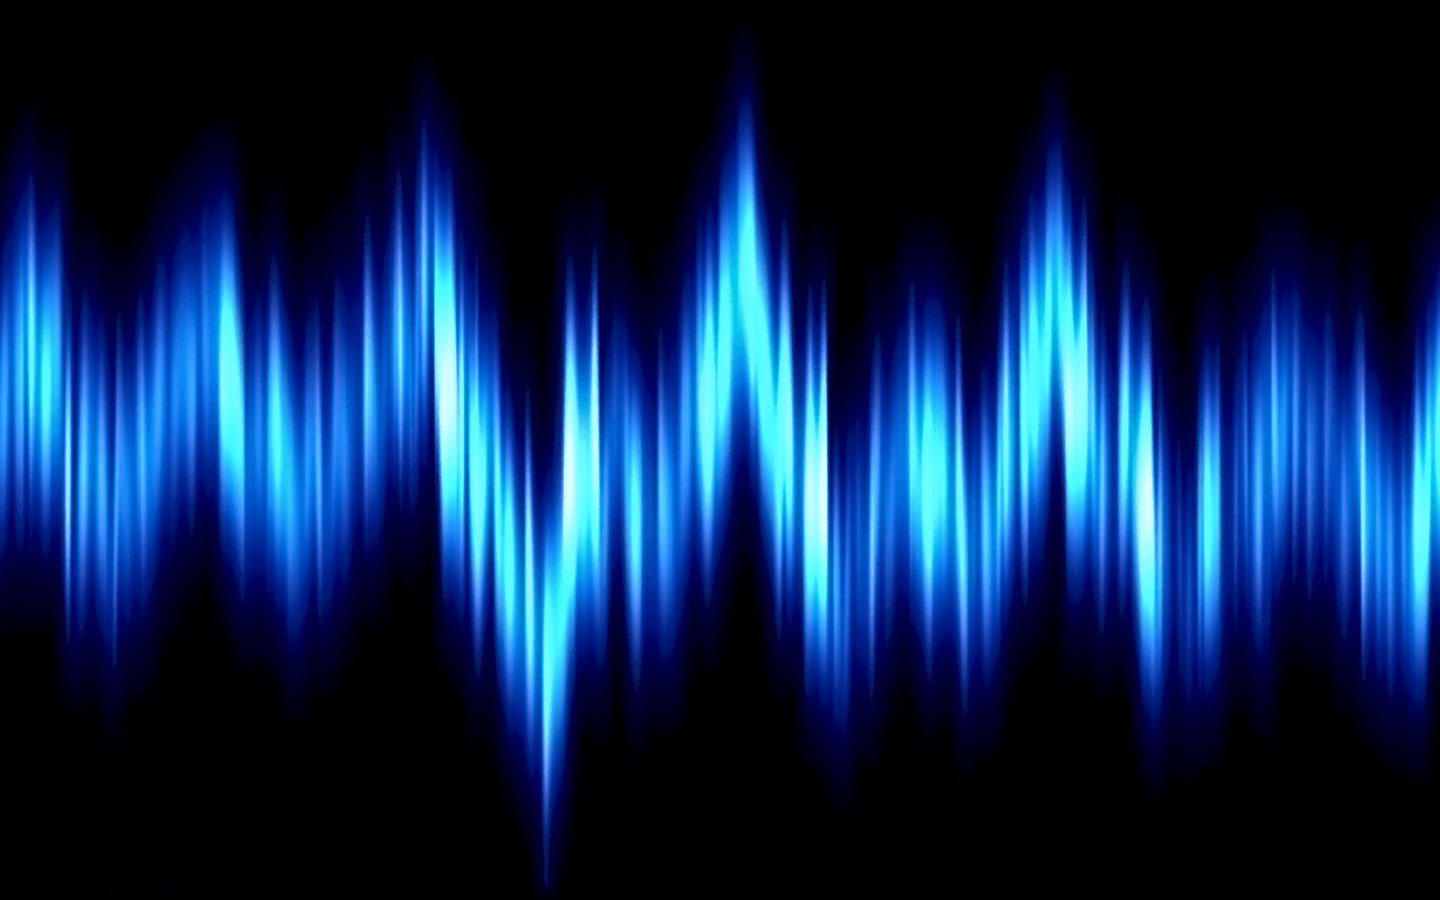 الطول الموجي: كيف تنتقل موجات الضوء وما أهمية الطول الموجي في ذلك؟